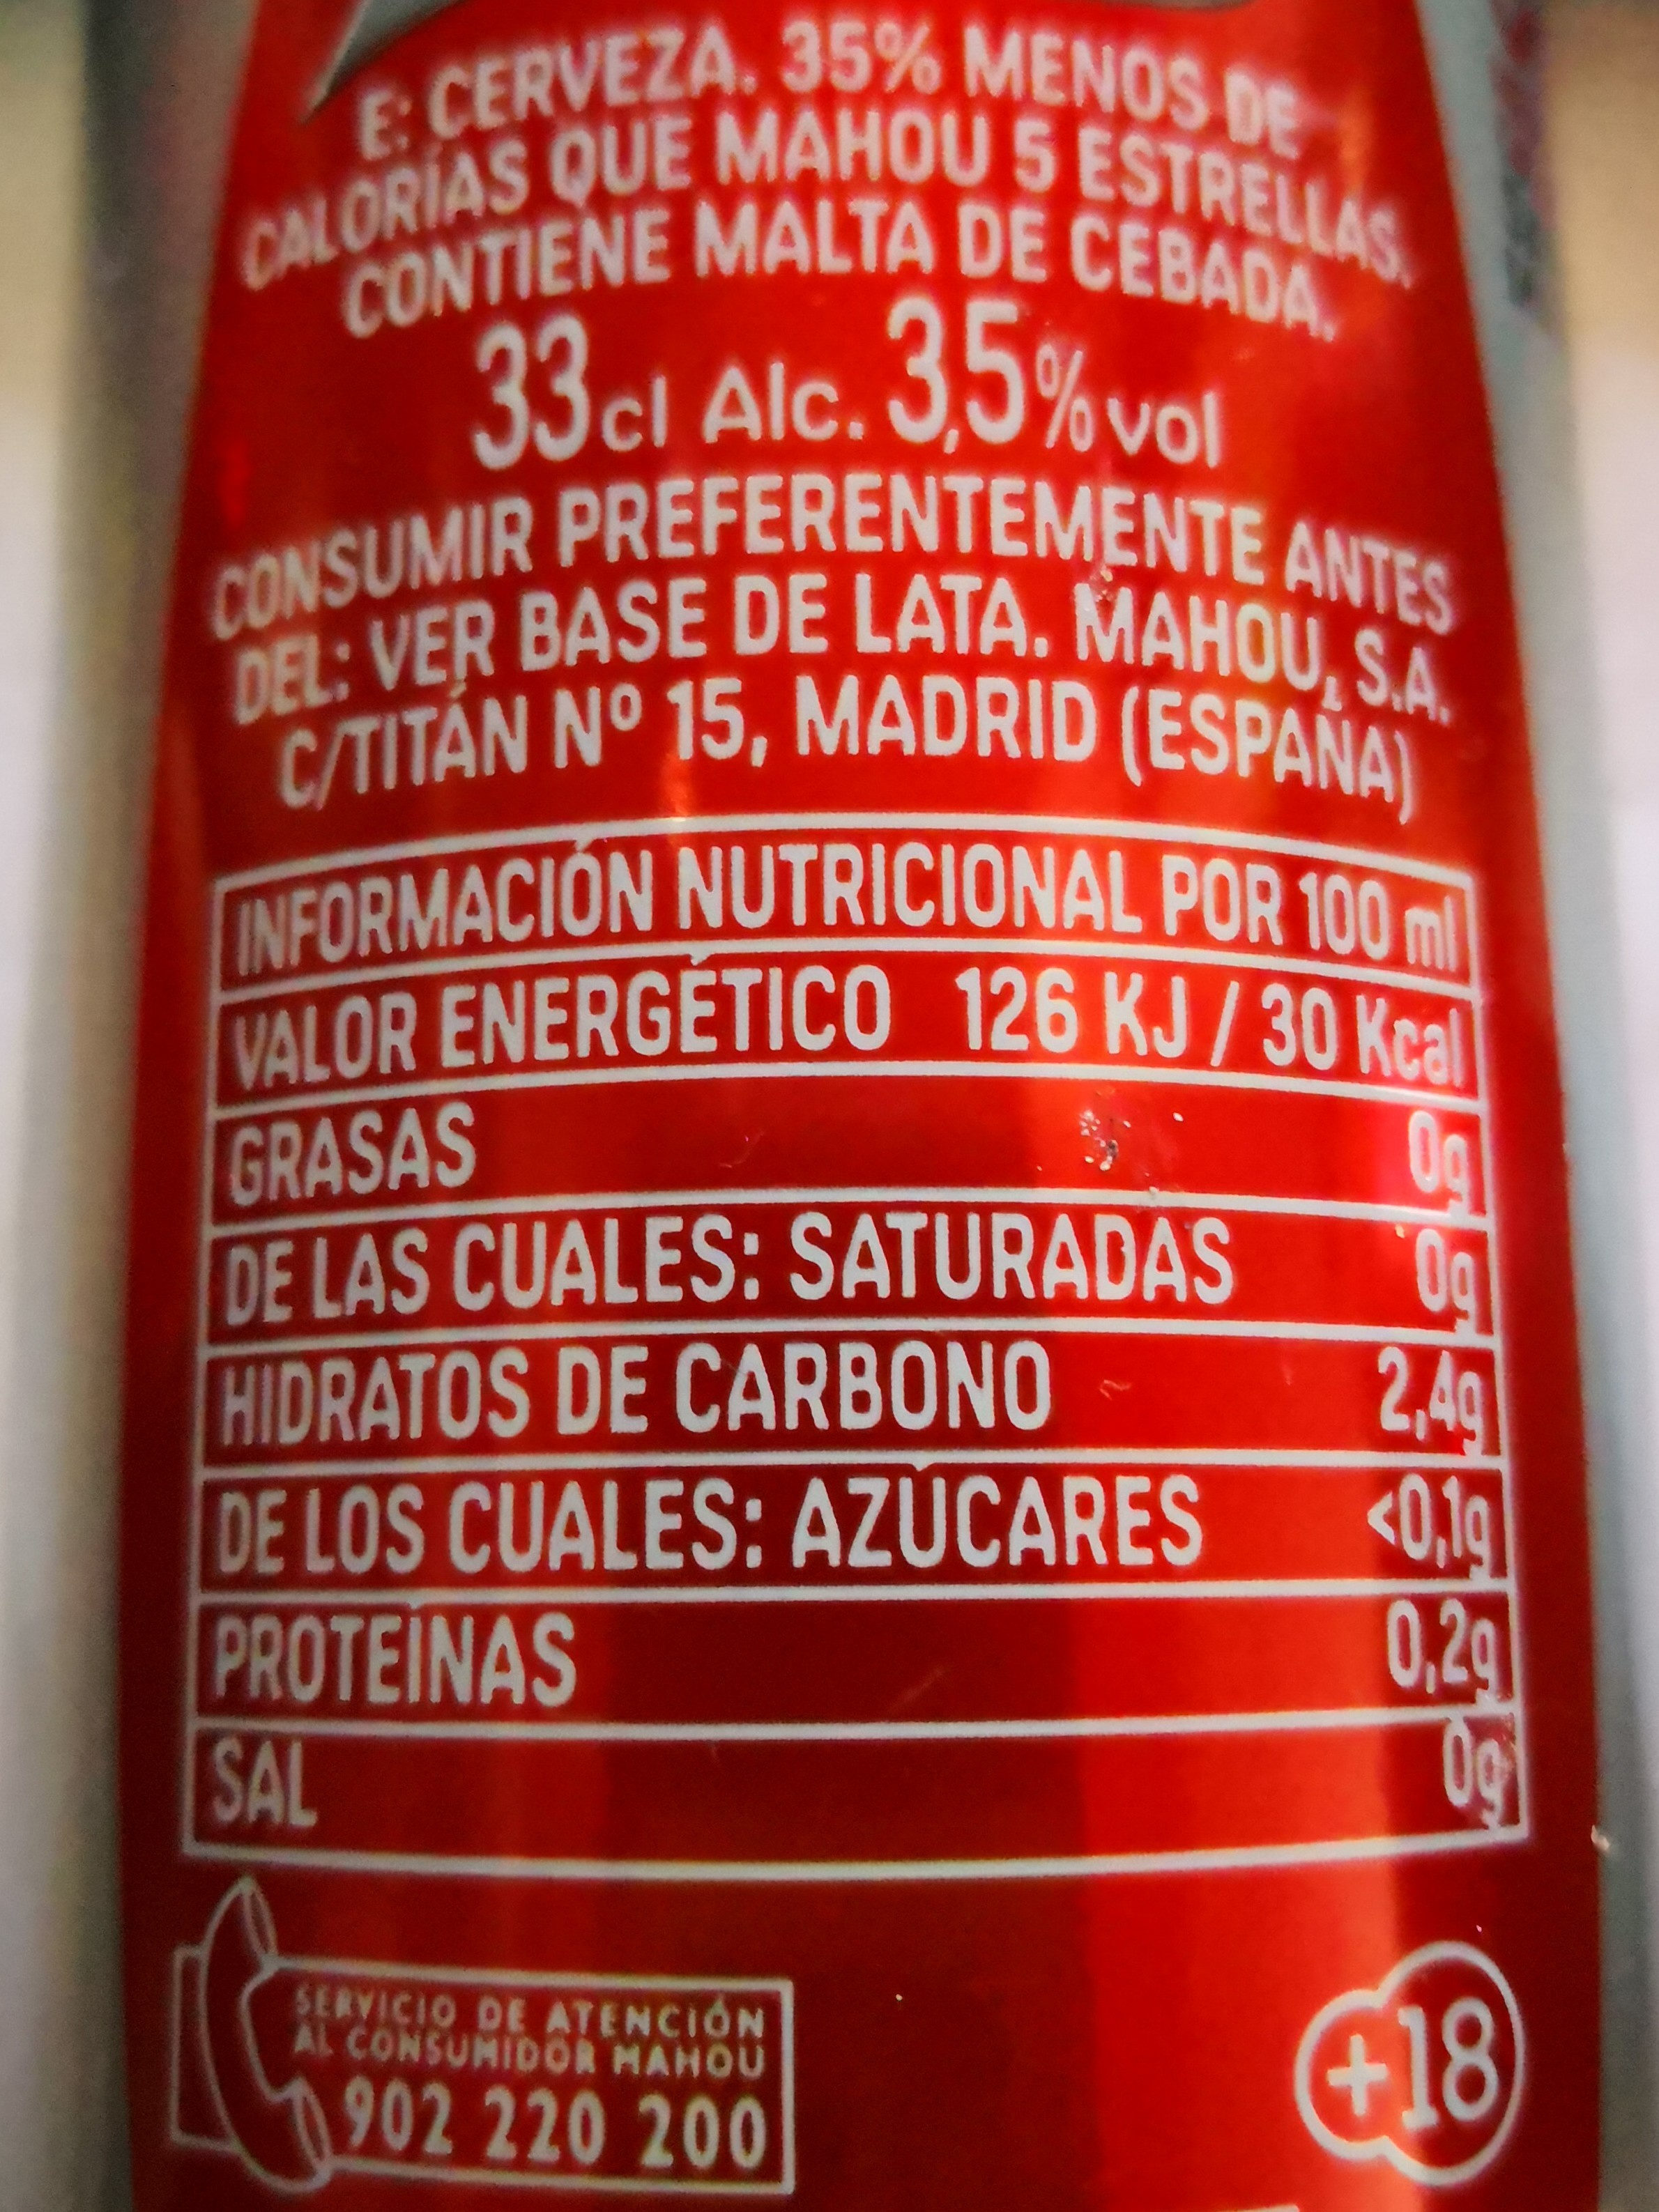 Cerveza Mahou premium Light - Ingredients - es